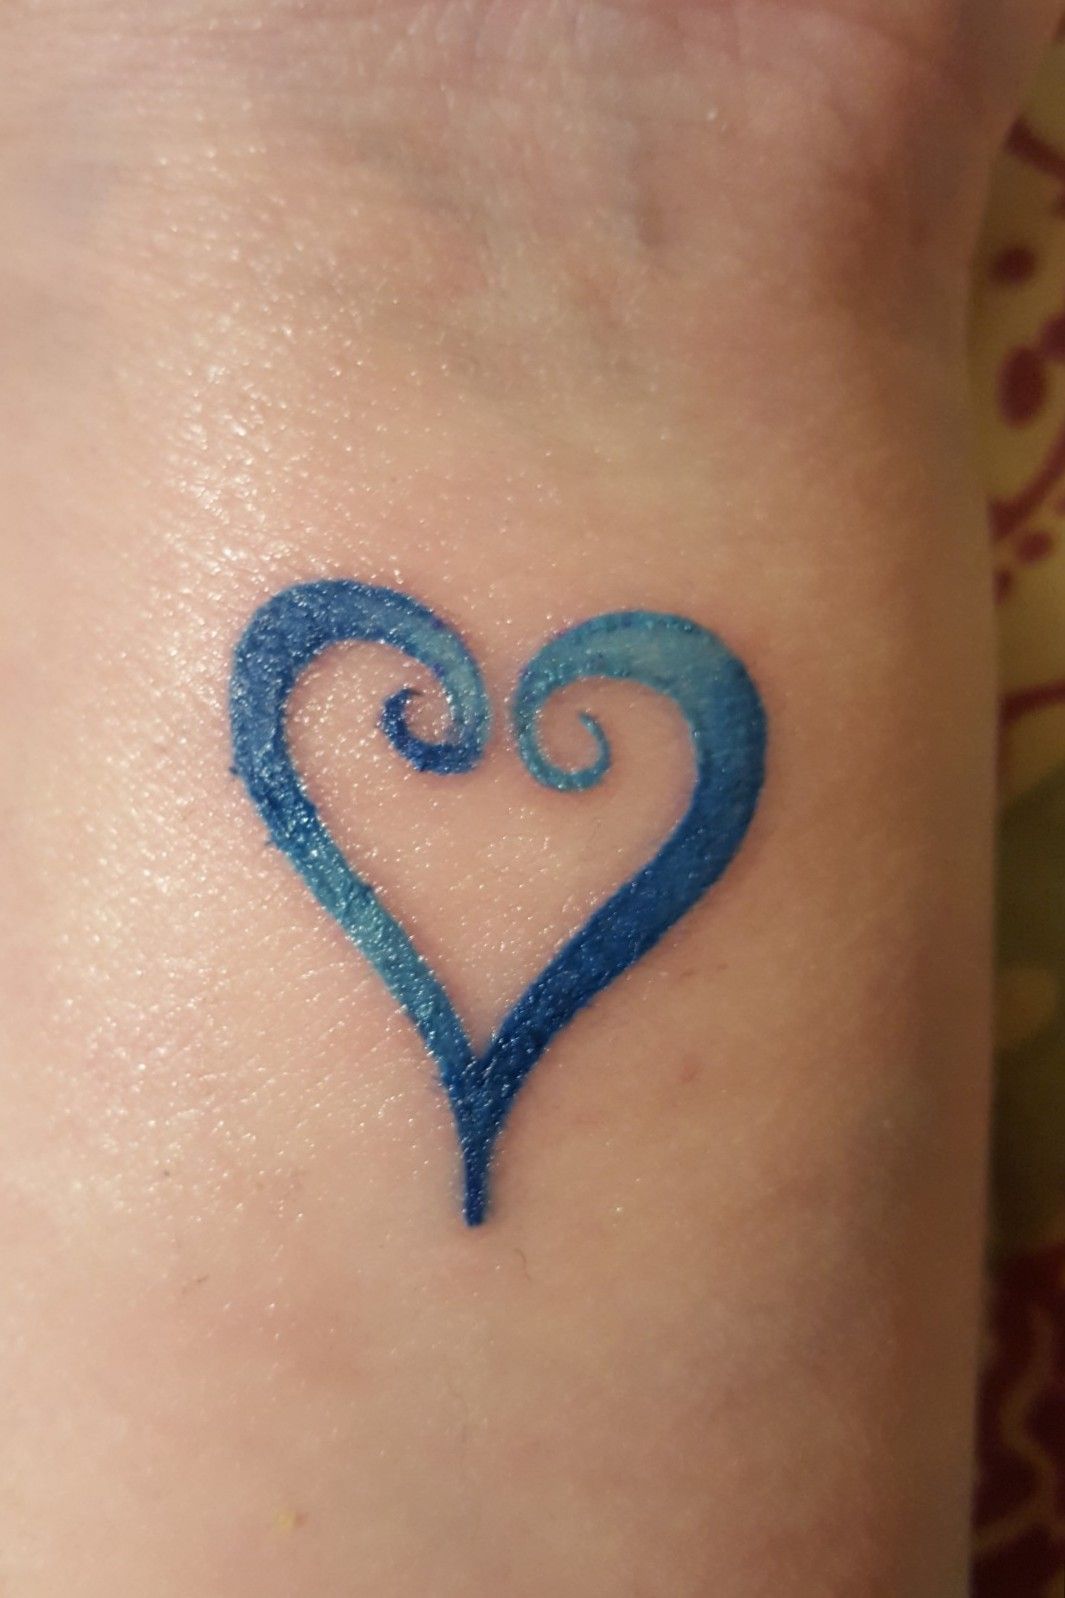 Kingdom hearts tattoo